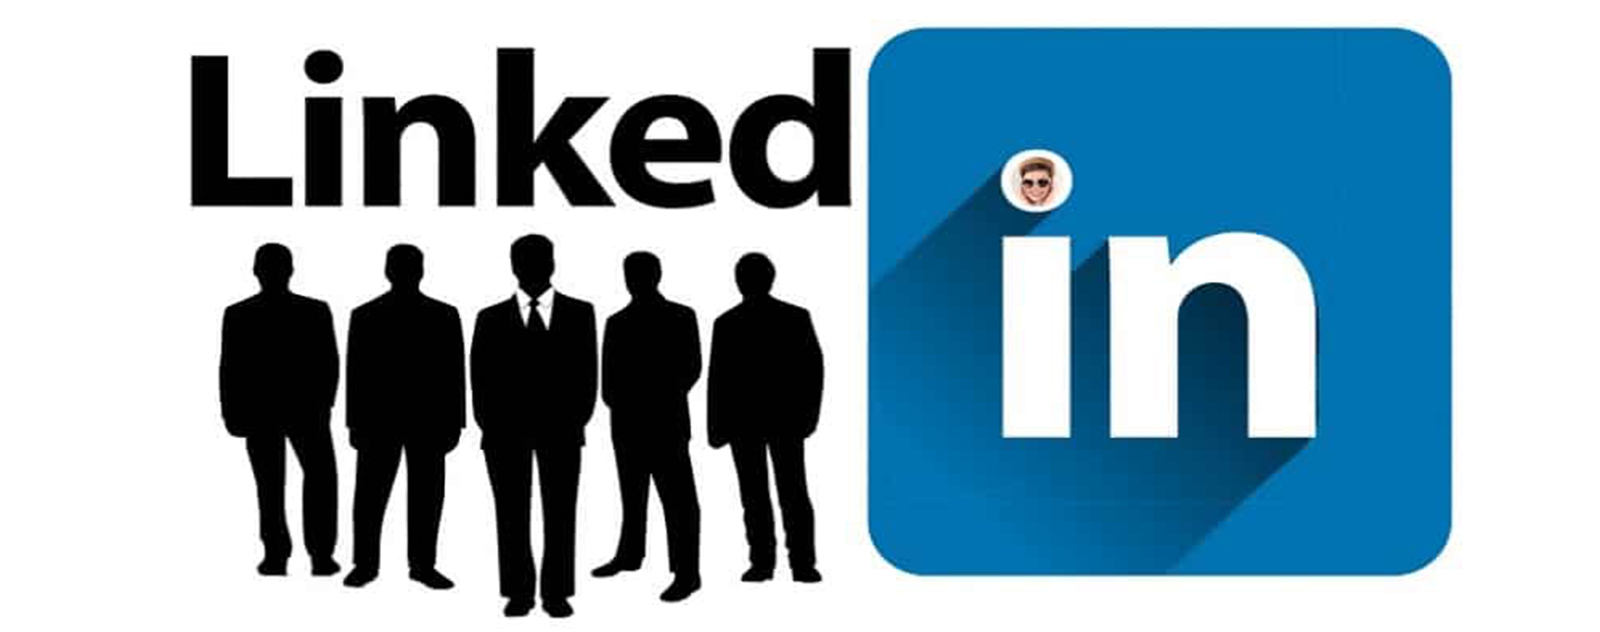 Linkedin est une plateforme populaire dans le business.
